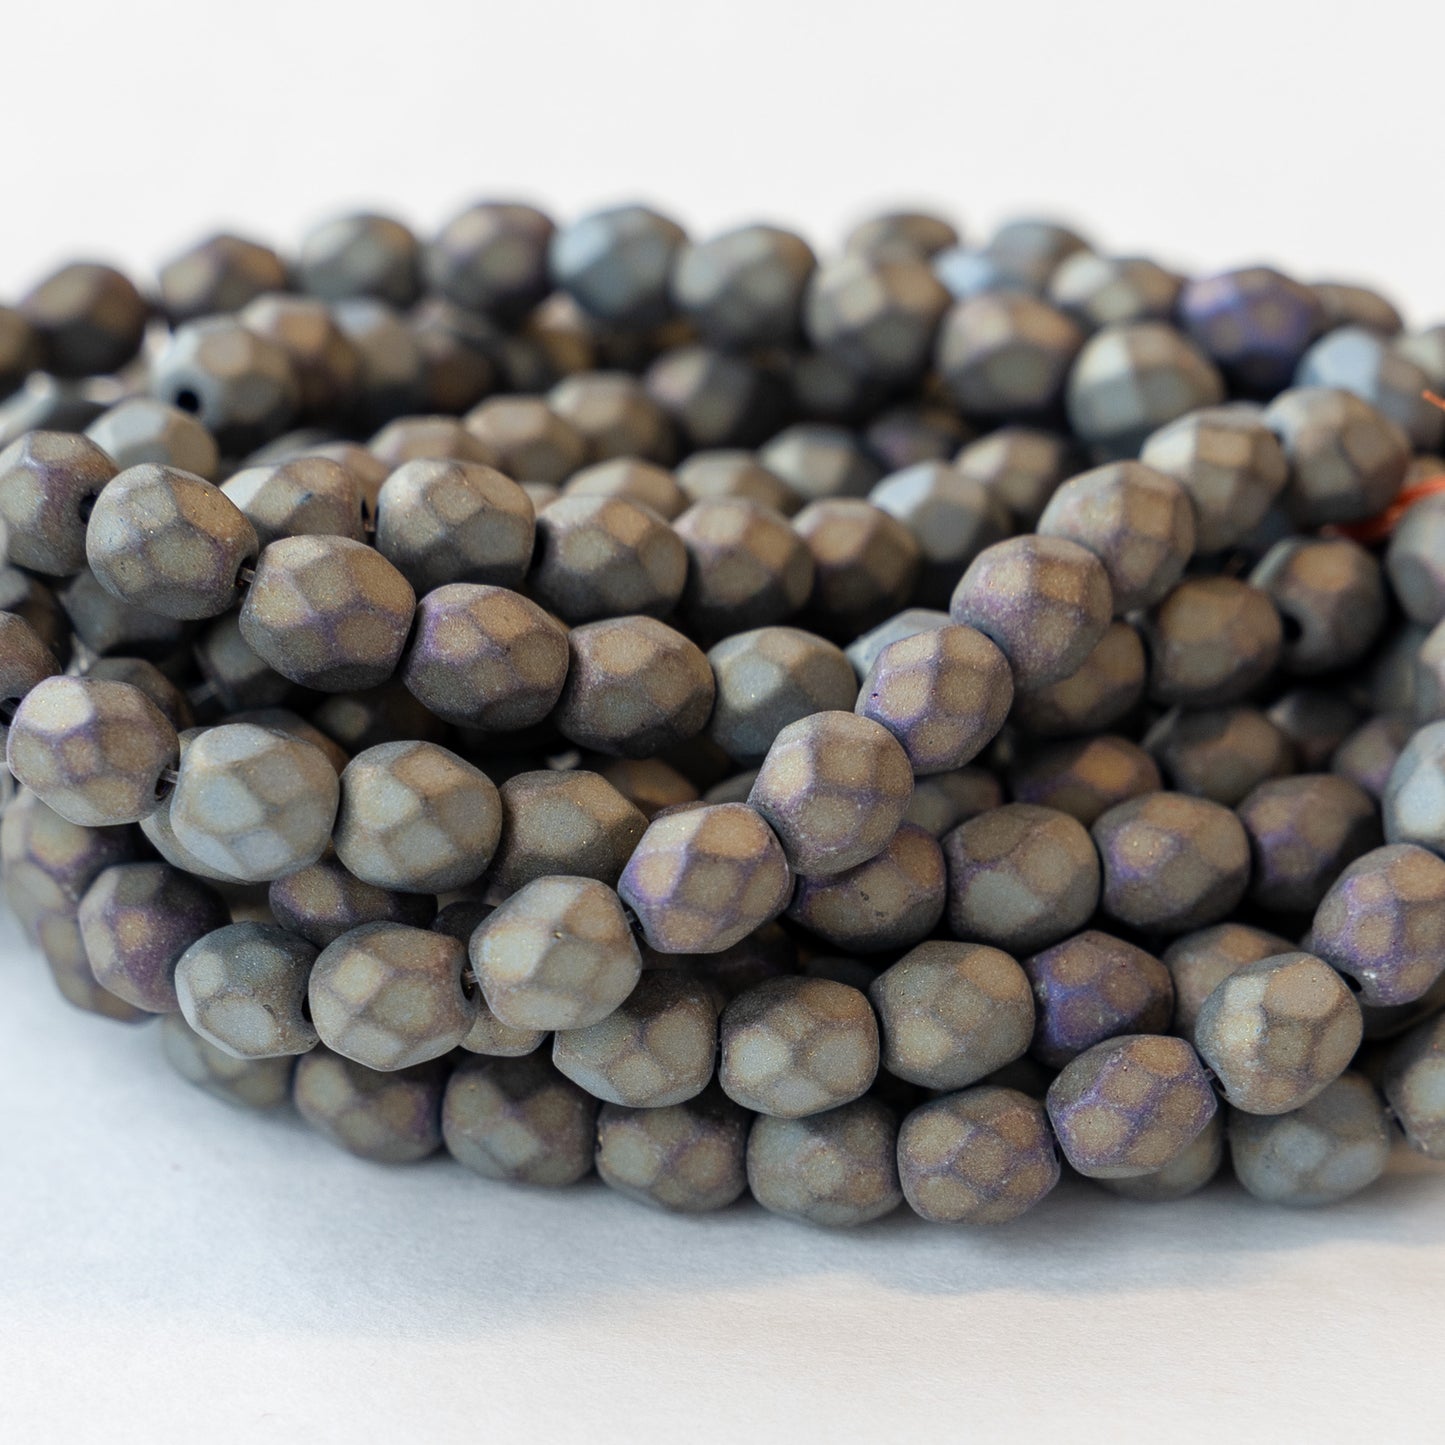 6mm Round Firepolished Beads - Matte Gunmetal Mix - 50 Beads